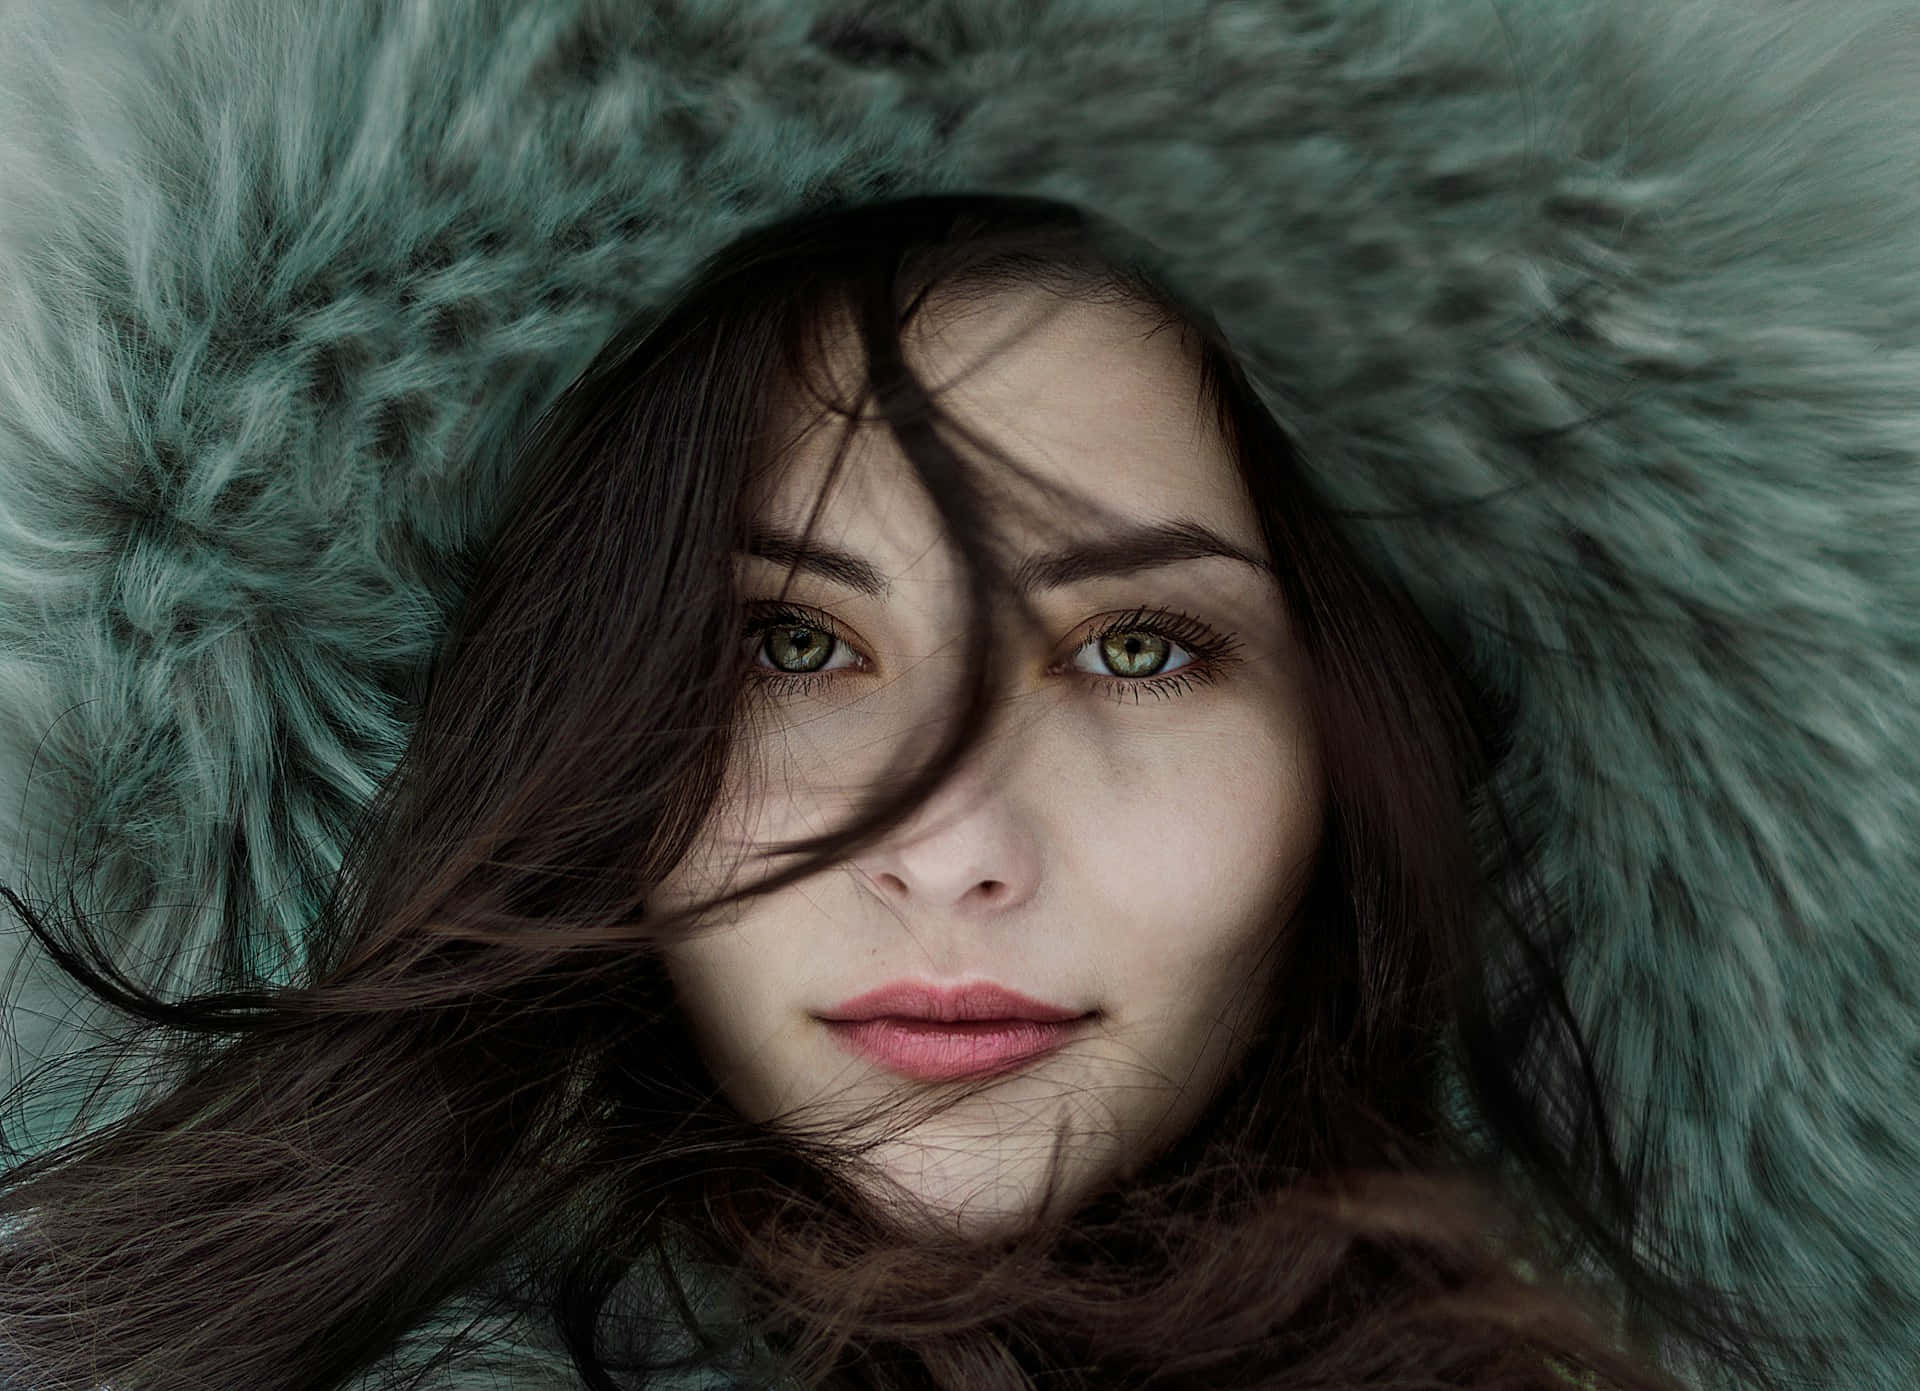 Winter Beauty In Fur Hood.jpg Wallpaper